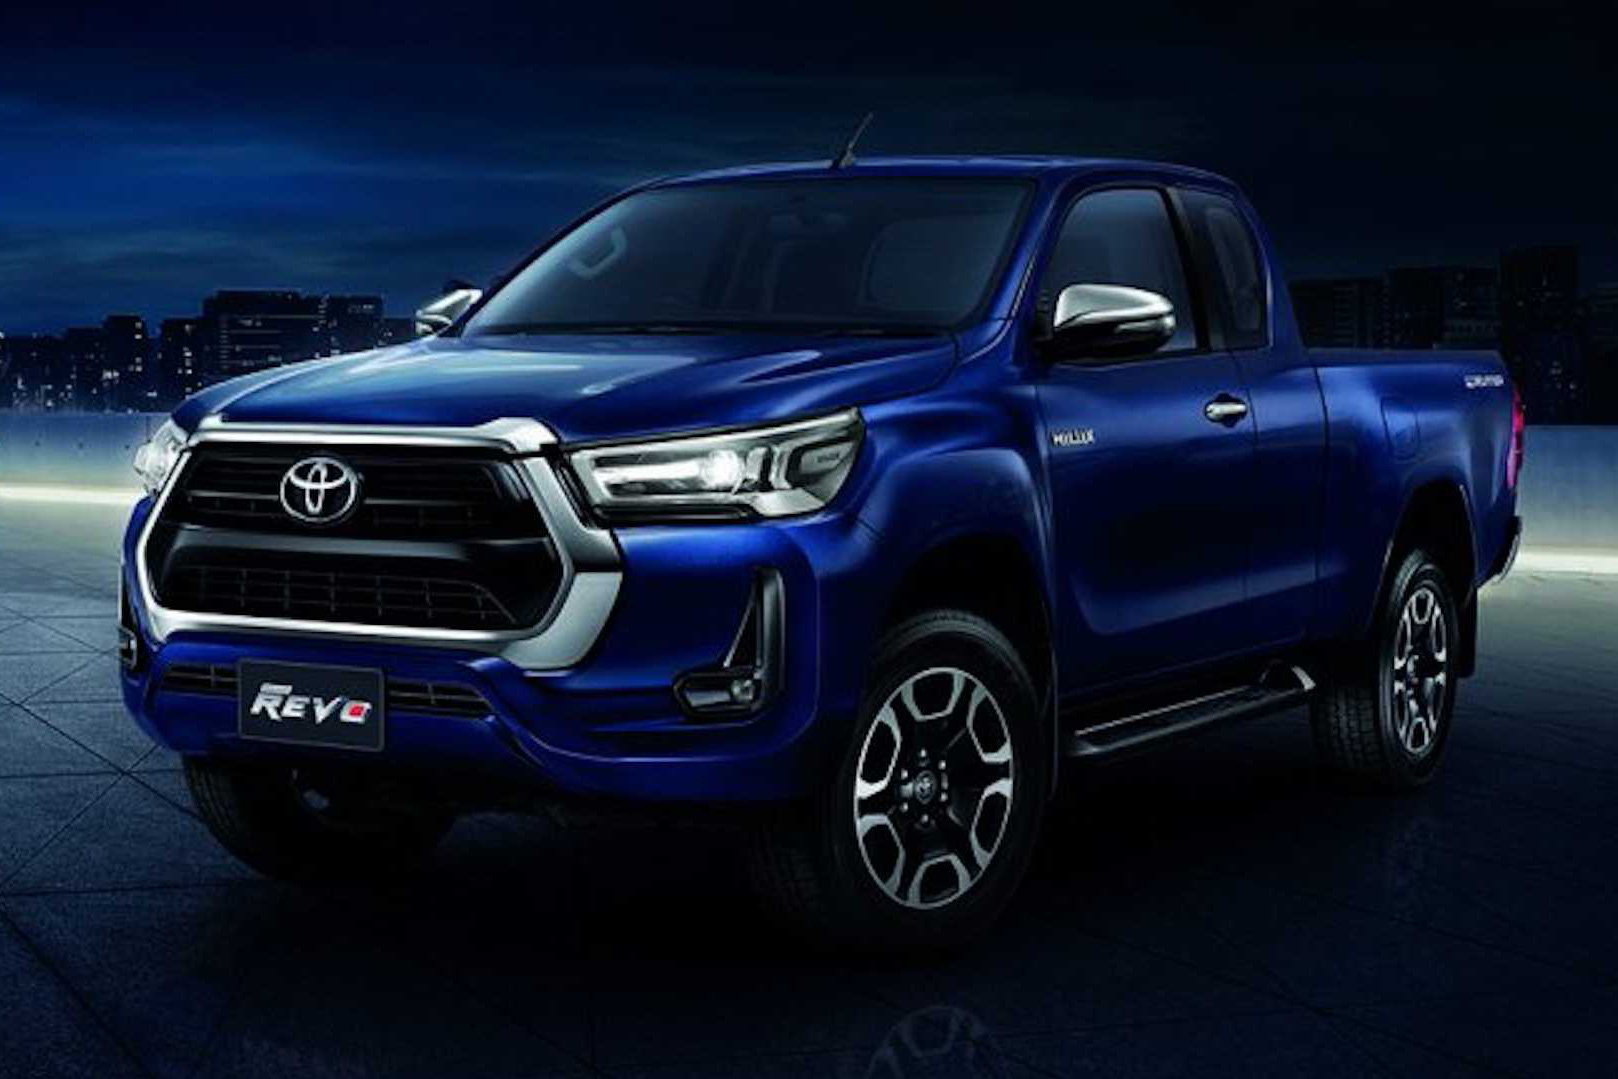 Ra mắt Toyota Hilux 2021: Như RAV4, mạnh ngang Ford Ranger Raptor, chờ ngày về Việt Nam vực dậy doanh số